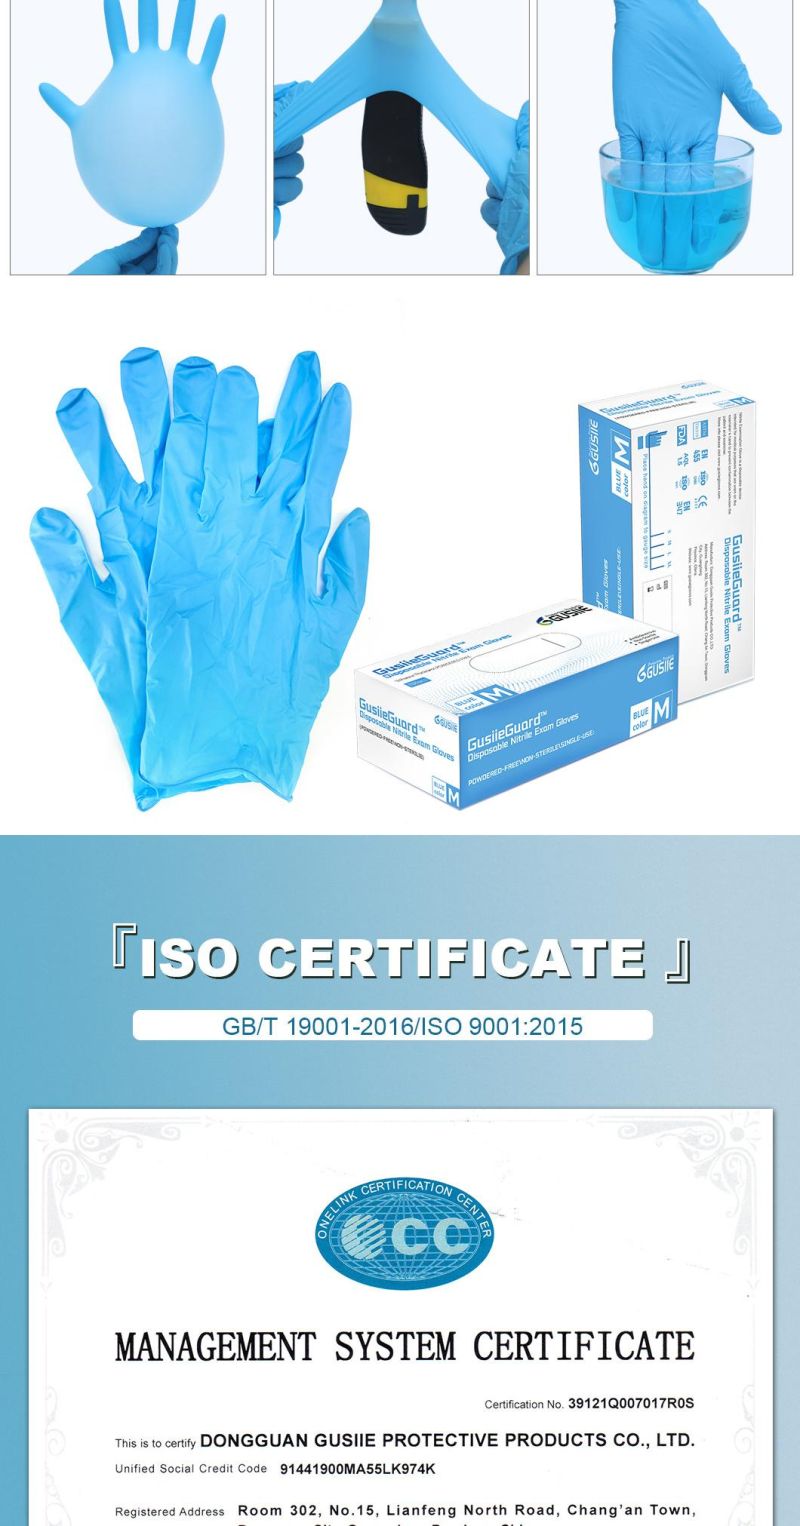 Disposable Nitrile Medical Examination Large Gloves Black Blue Nitrile Protective Gloves